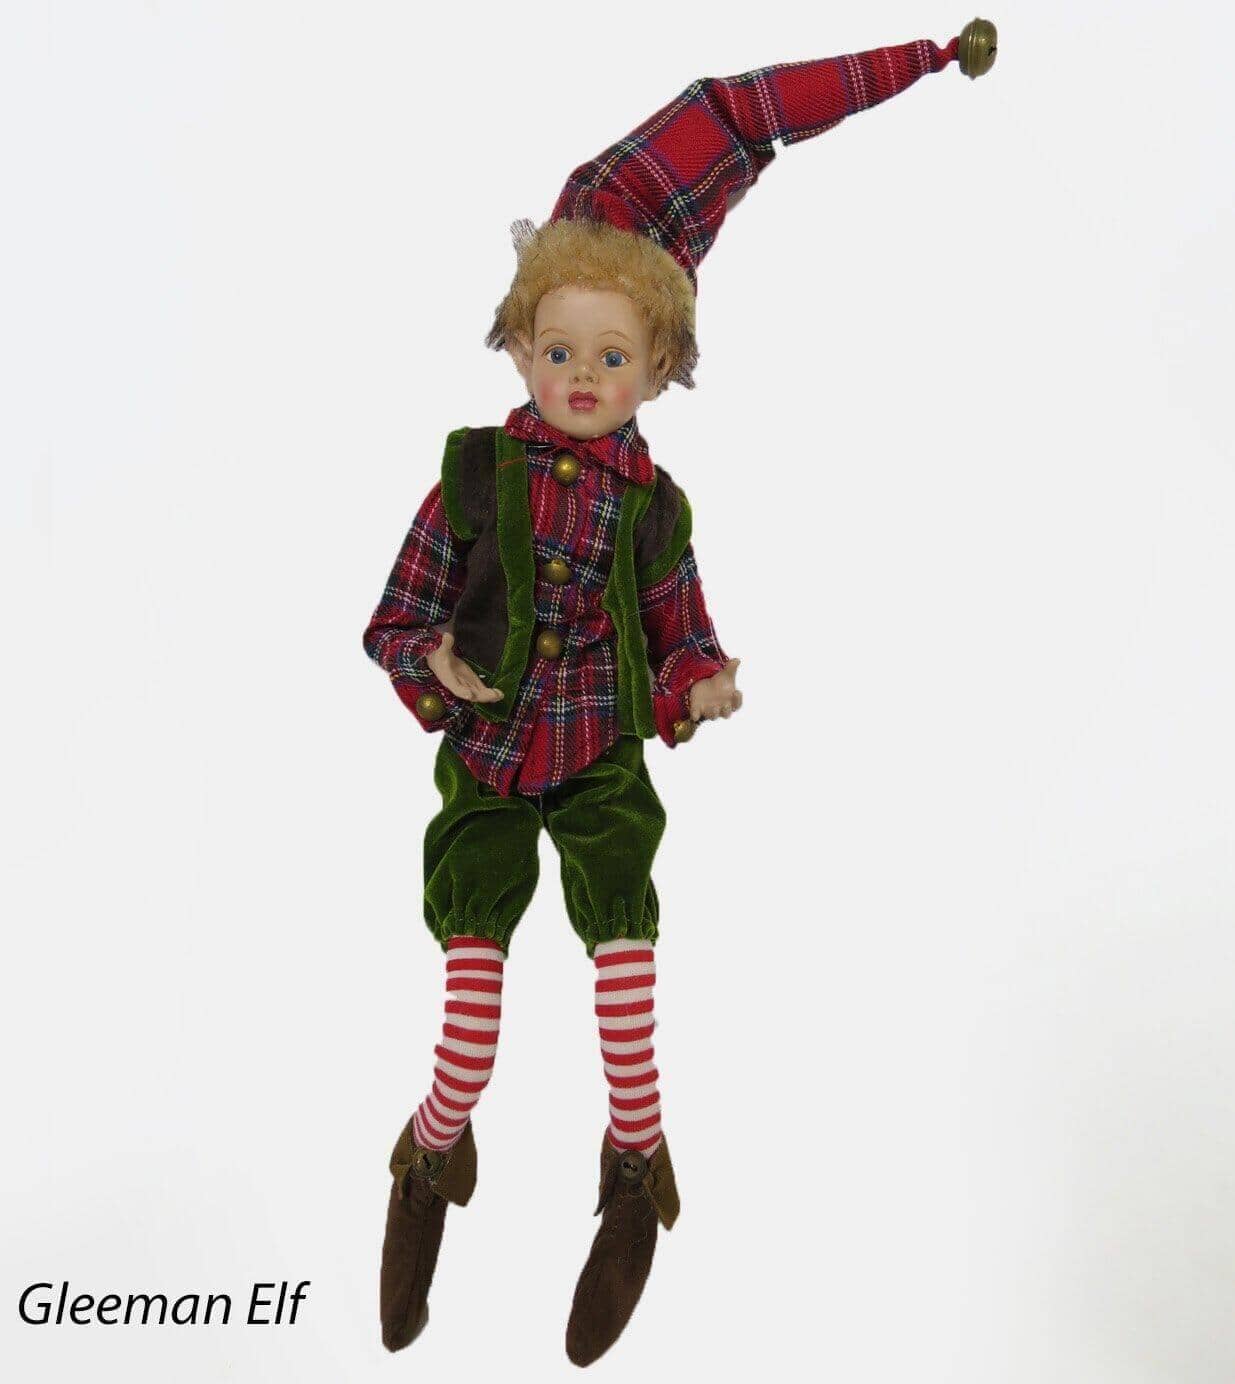 Gleeman Elf